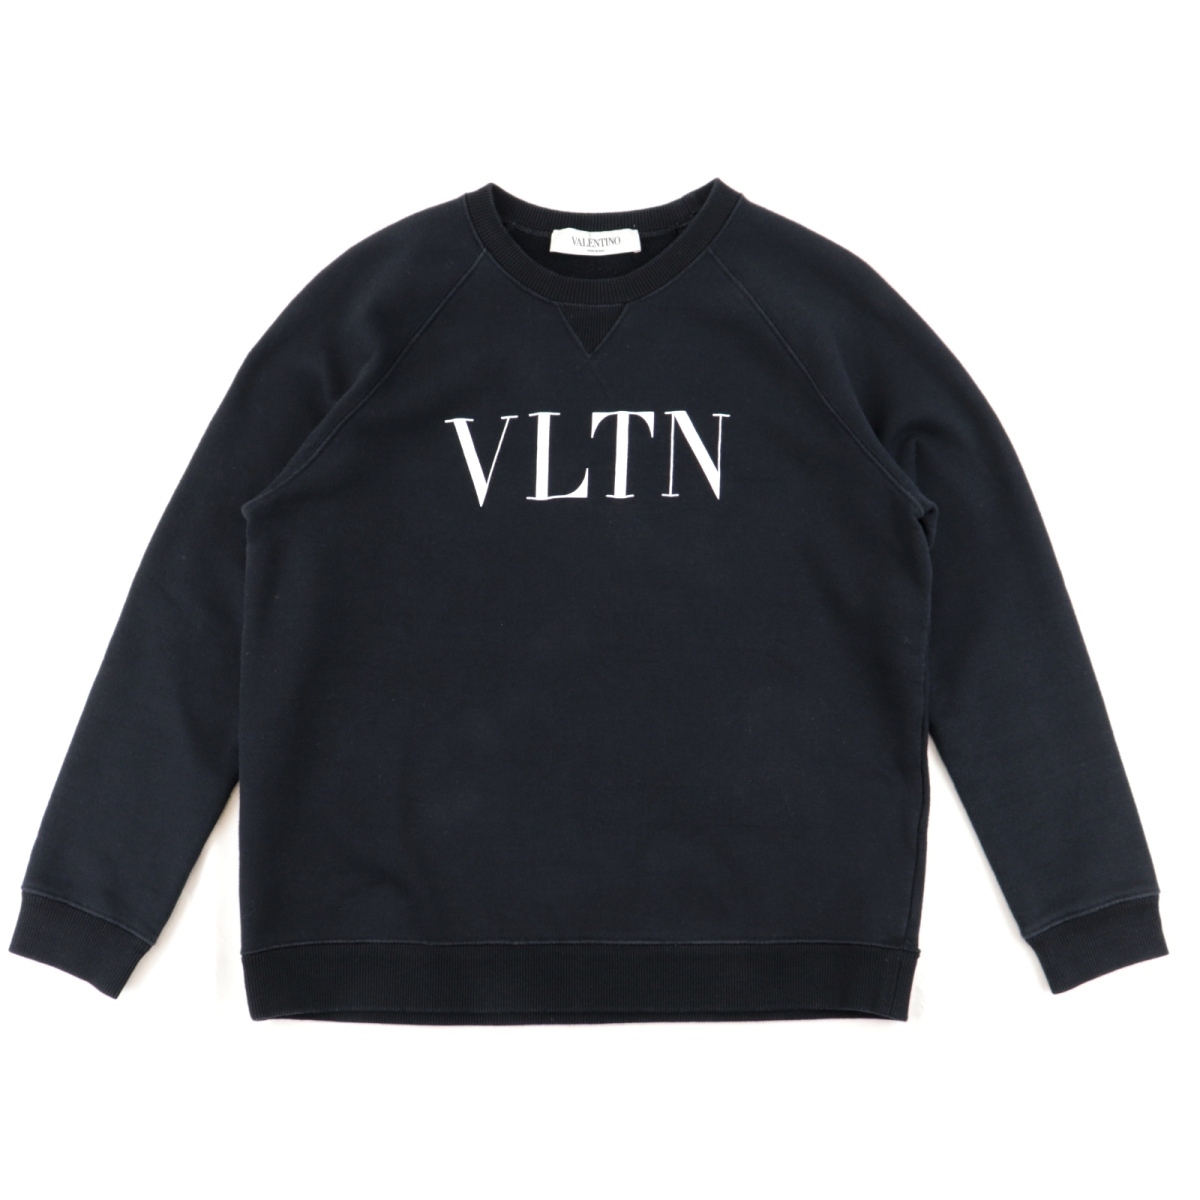 ヴァレンチノ VLTNロゴ スウェットシャツ レディース 黒 XS クルー